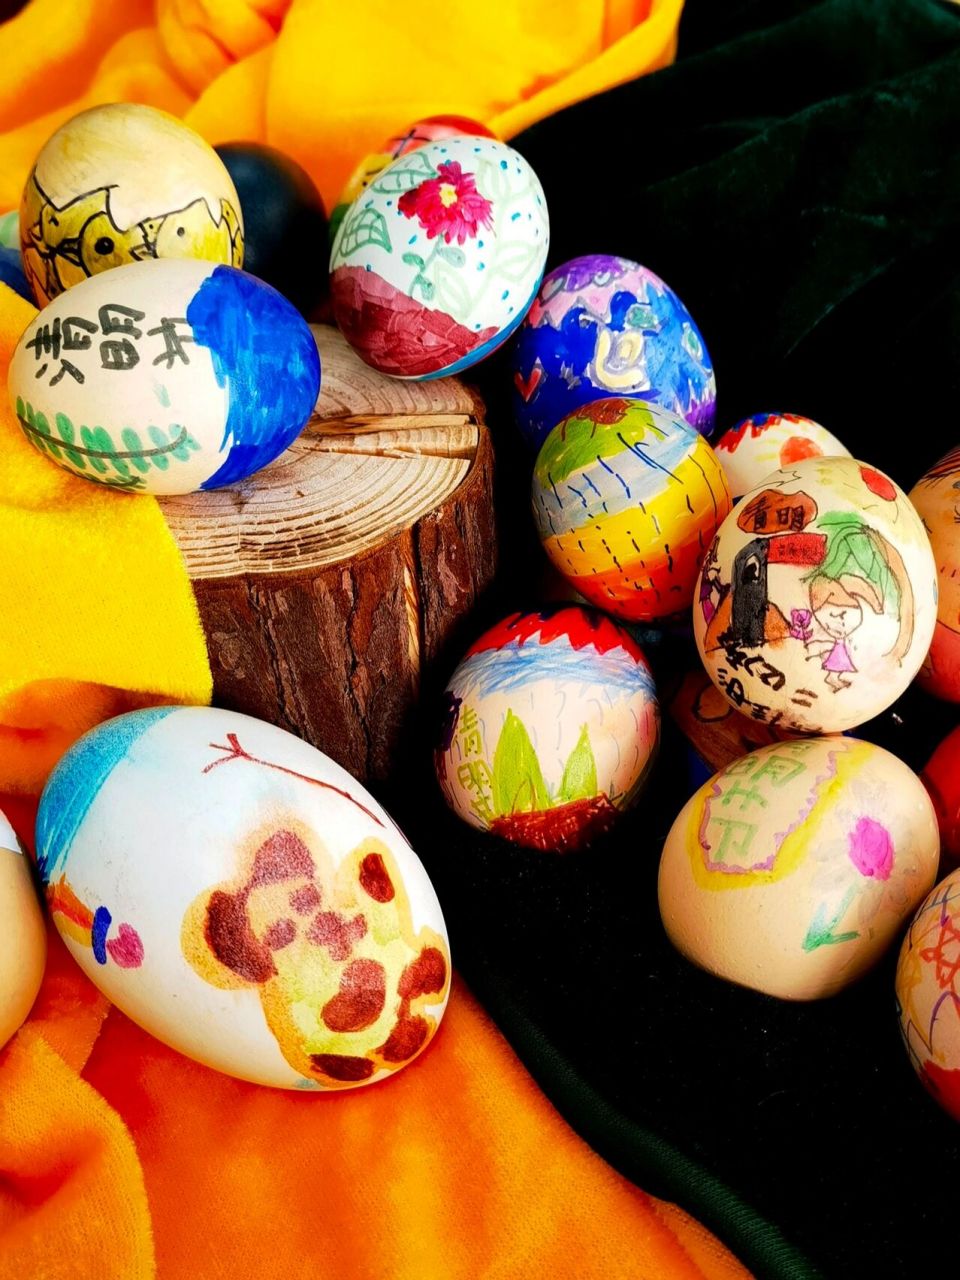 清明系列活动——画彩蛋 关于大张旗鼓的学校活动: 清明节蛋大致分为